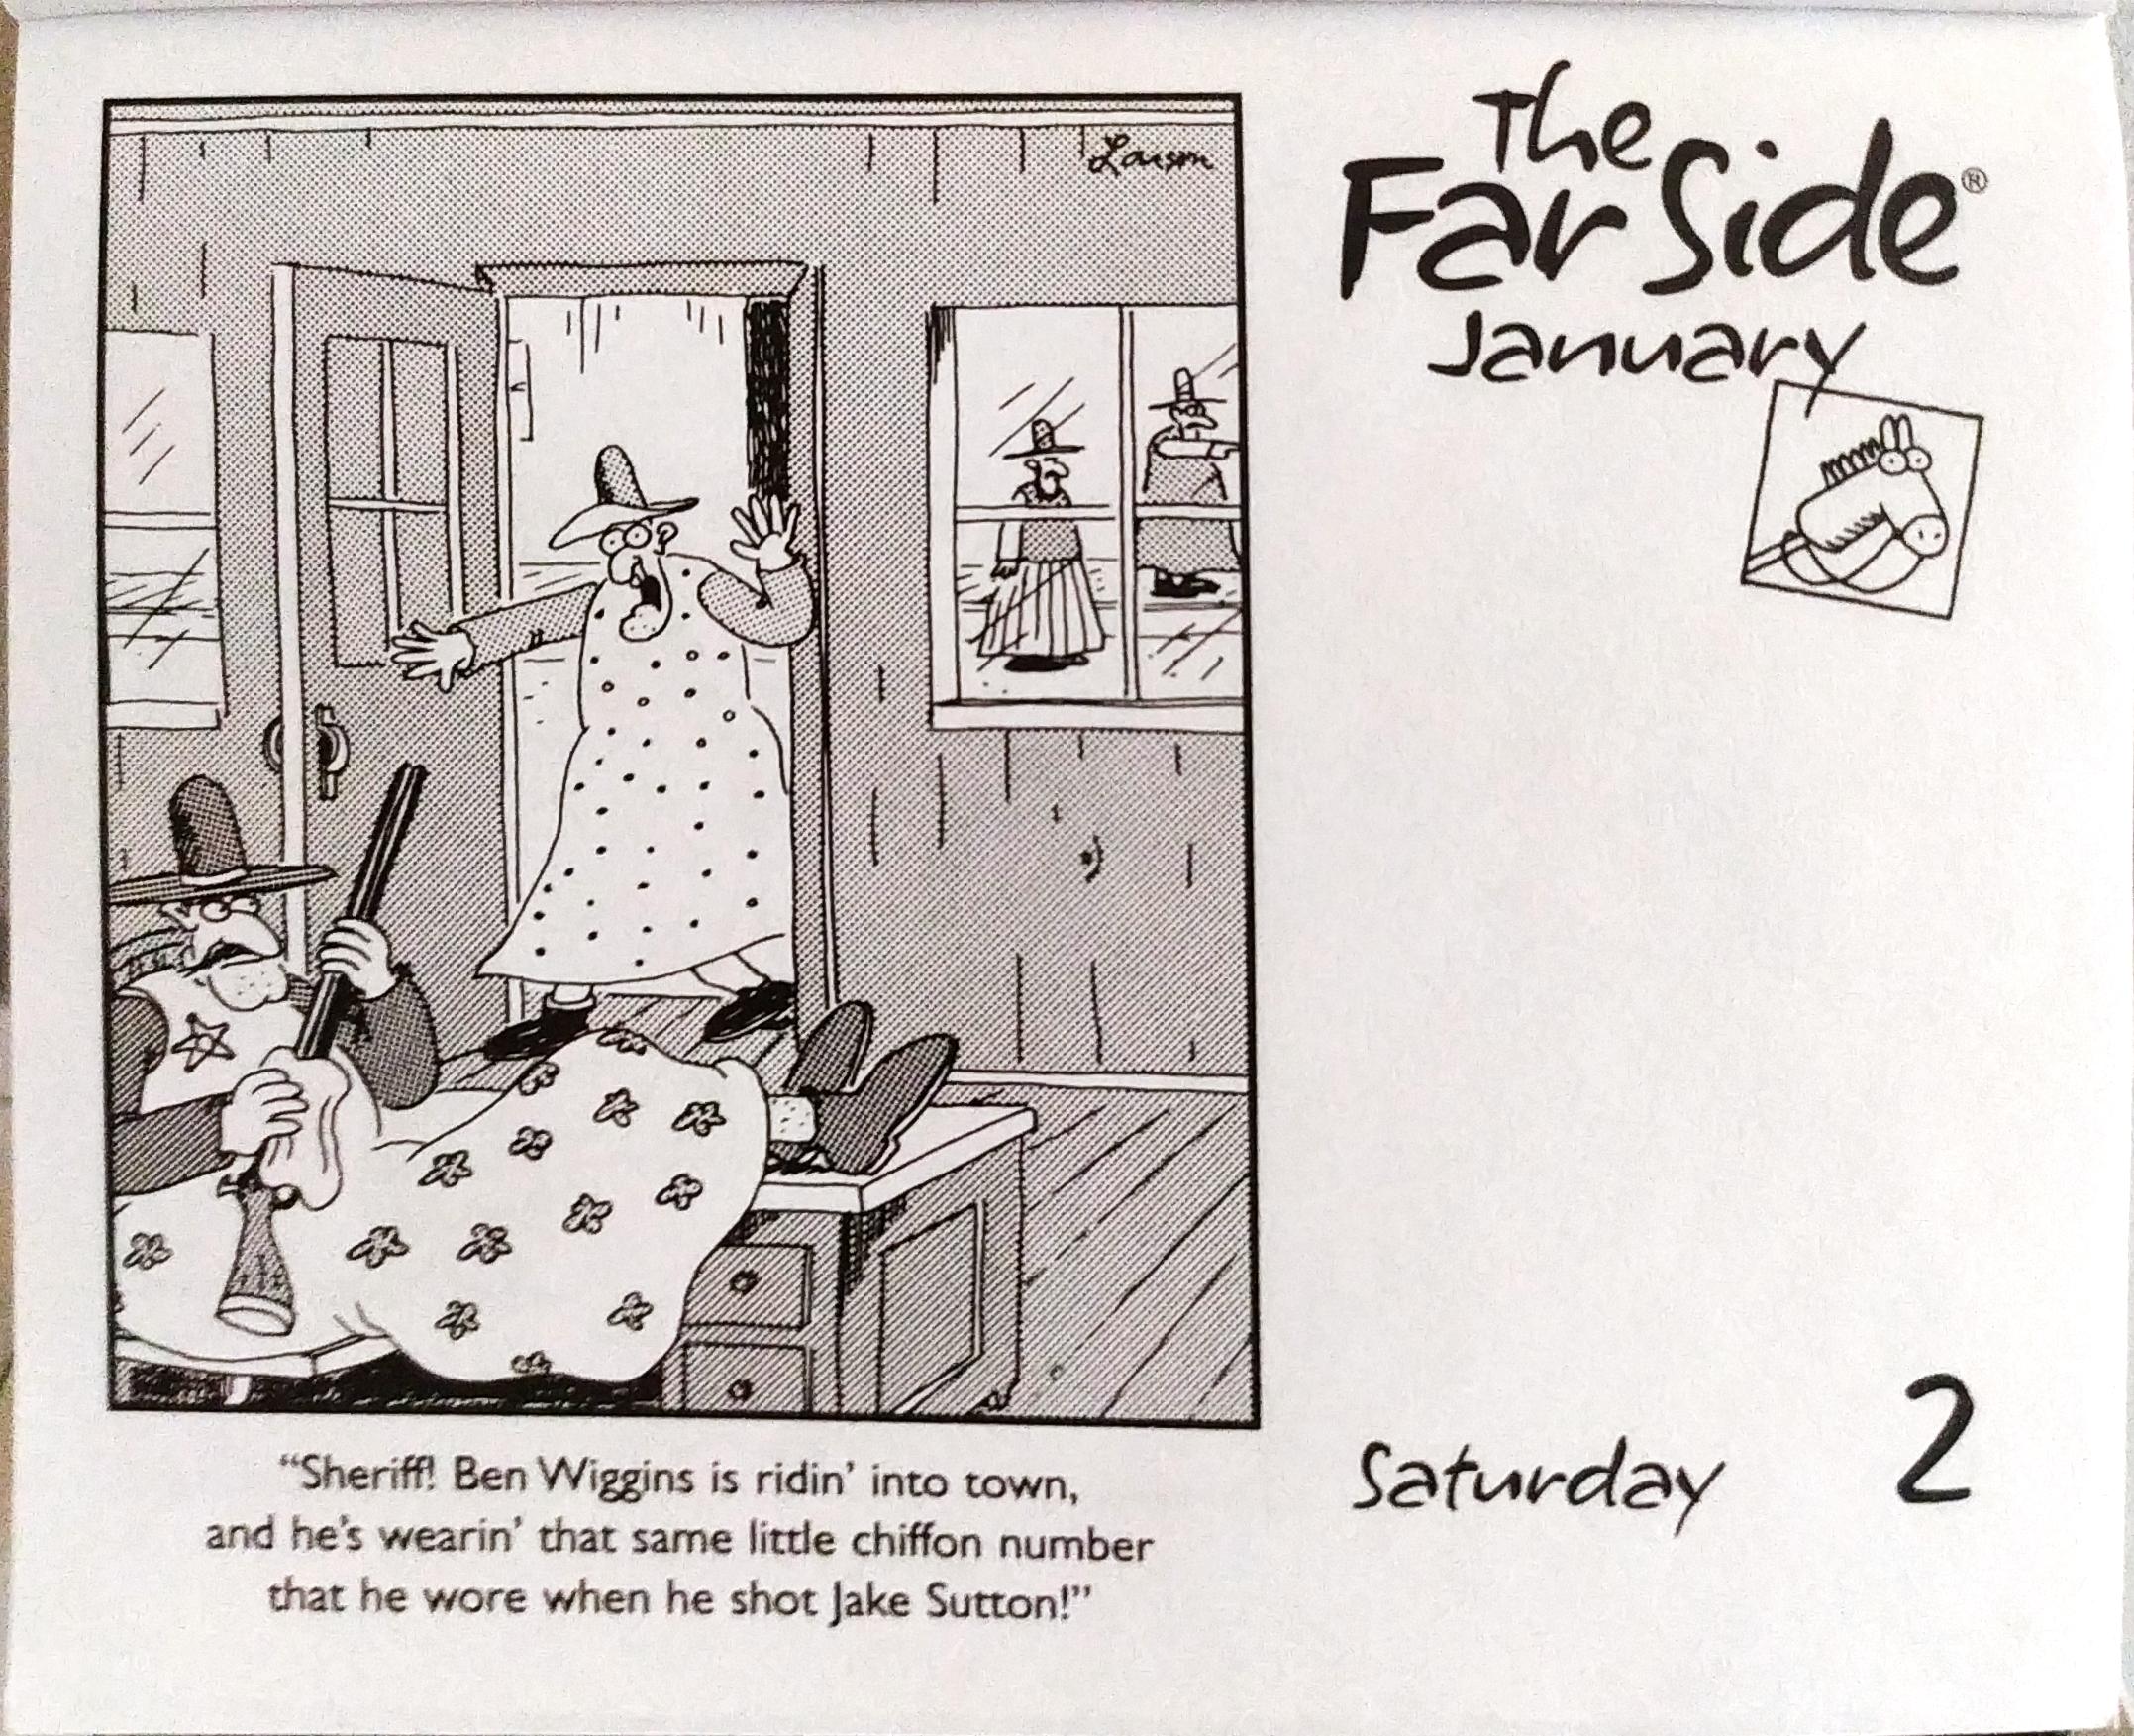 the-far-side-calendar-january-2nd-2021-scrolller